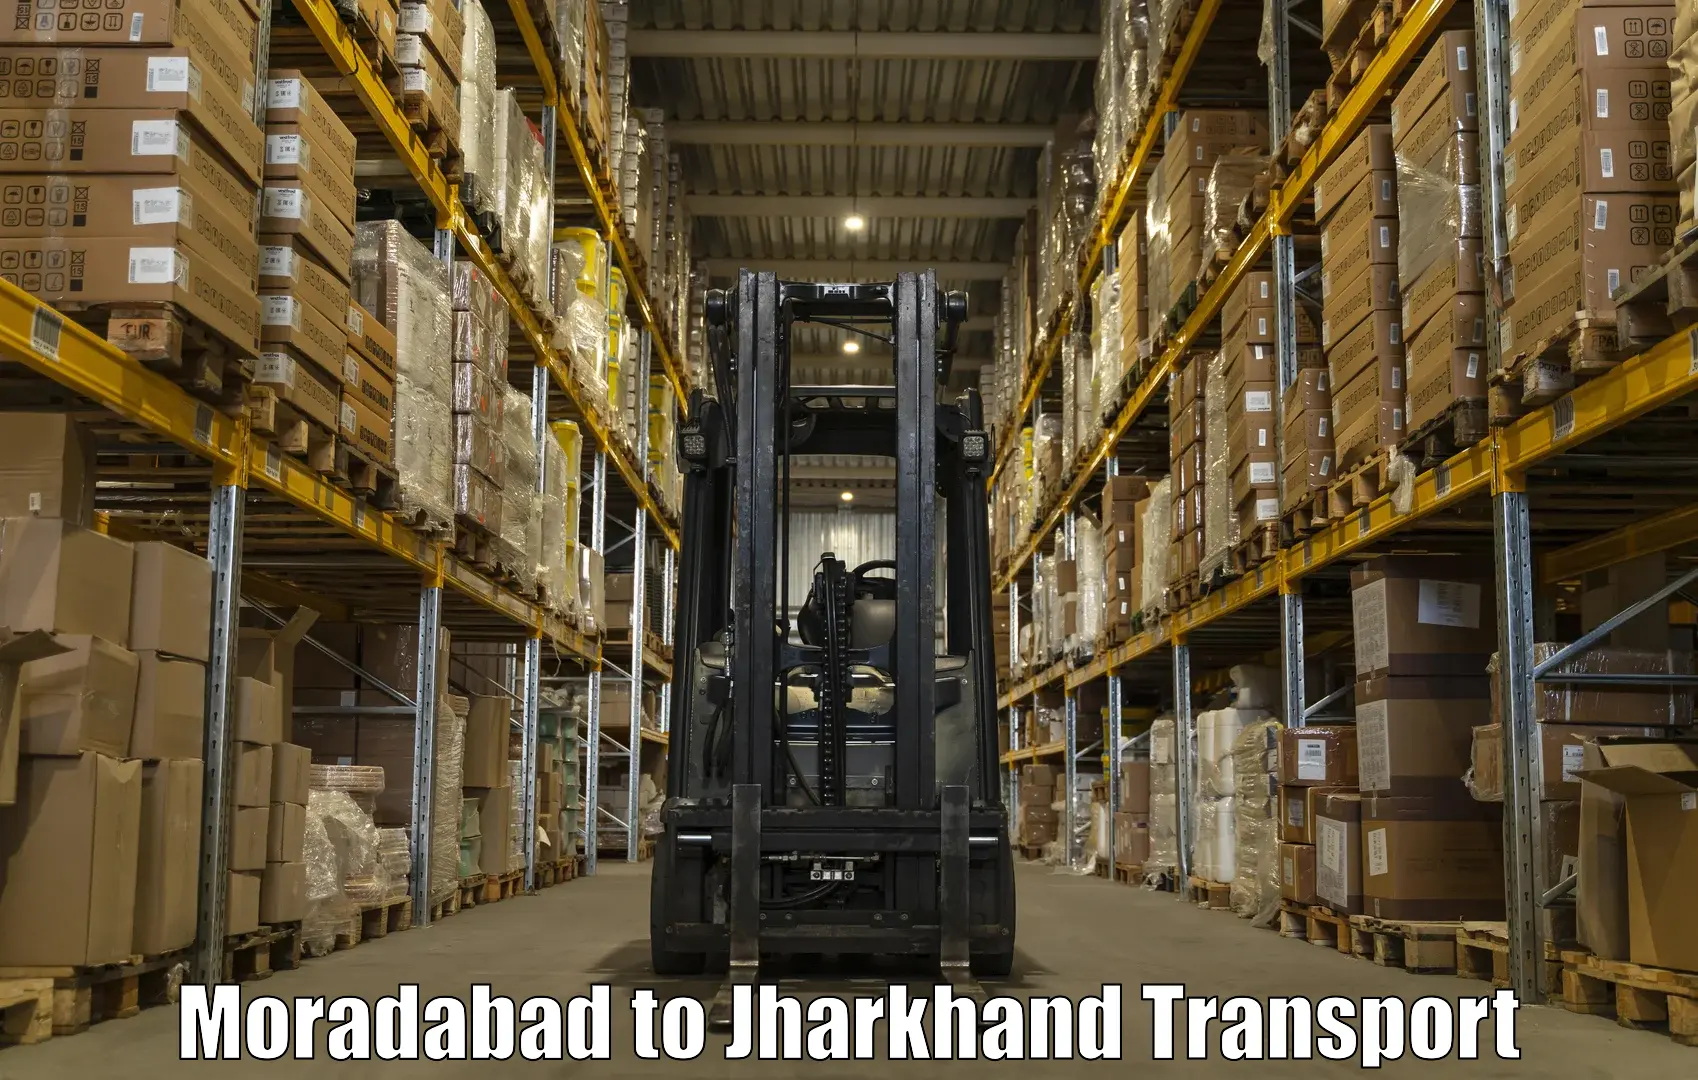 Daily parcel service transport Moradabad to NIT Jamshedpur